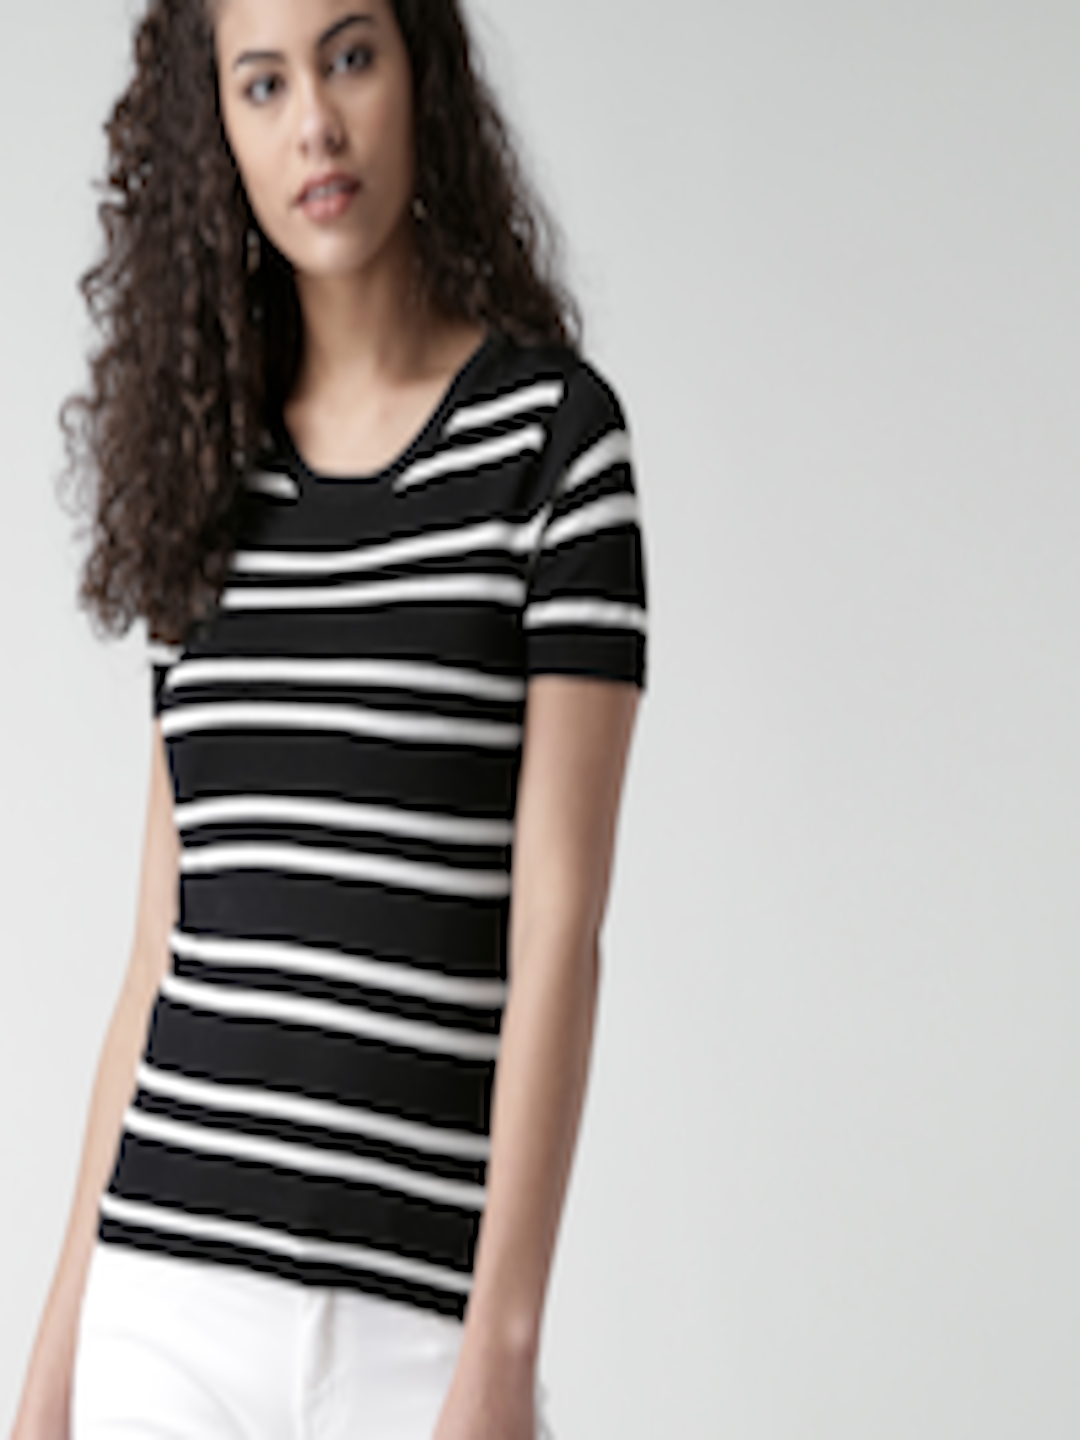 Buy FOREVER 21 Women Black & White Striped Top - Tops for Women 1536581 ...